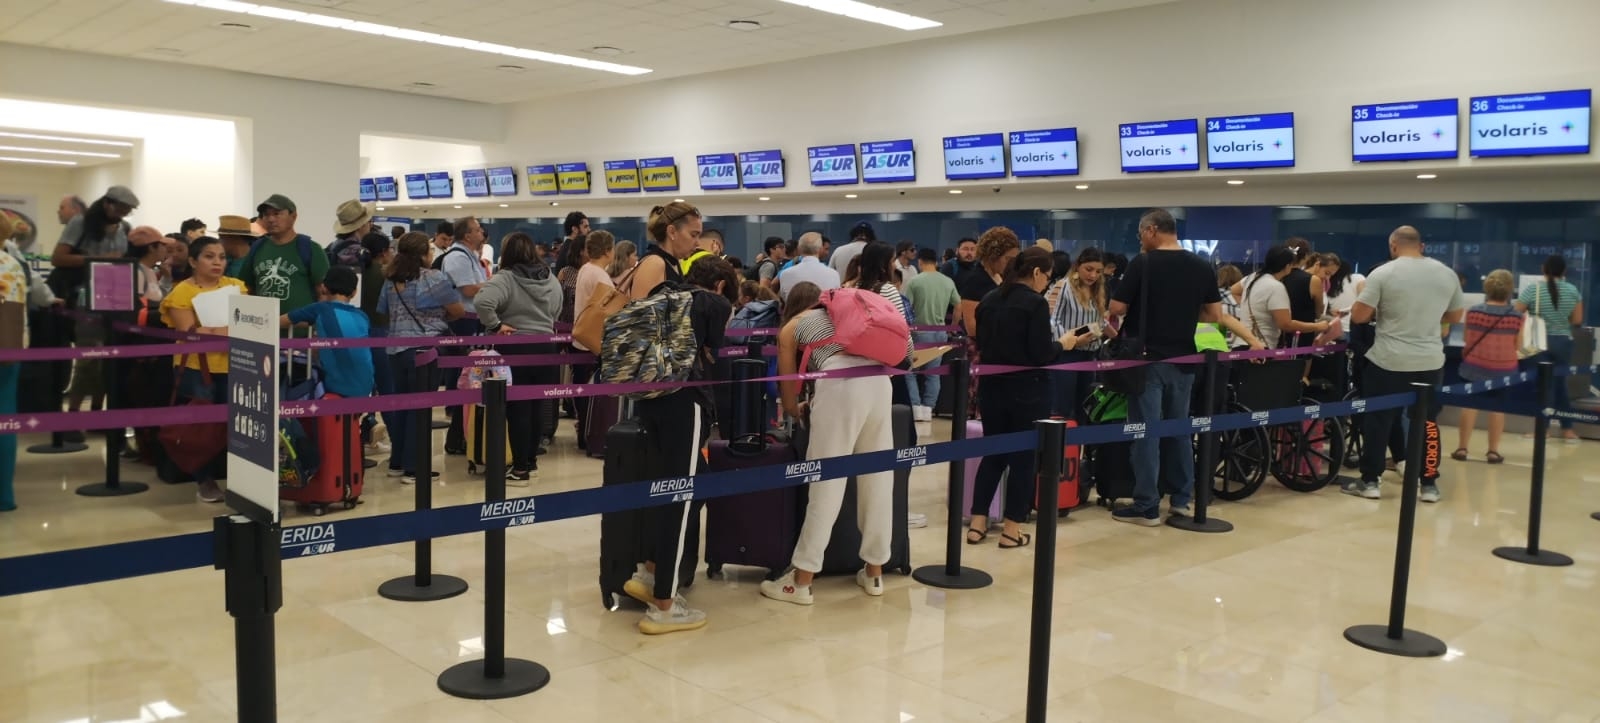 Se registró gran movilidad de pasajeros en el aeropuerto de Mérida